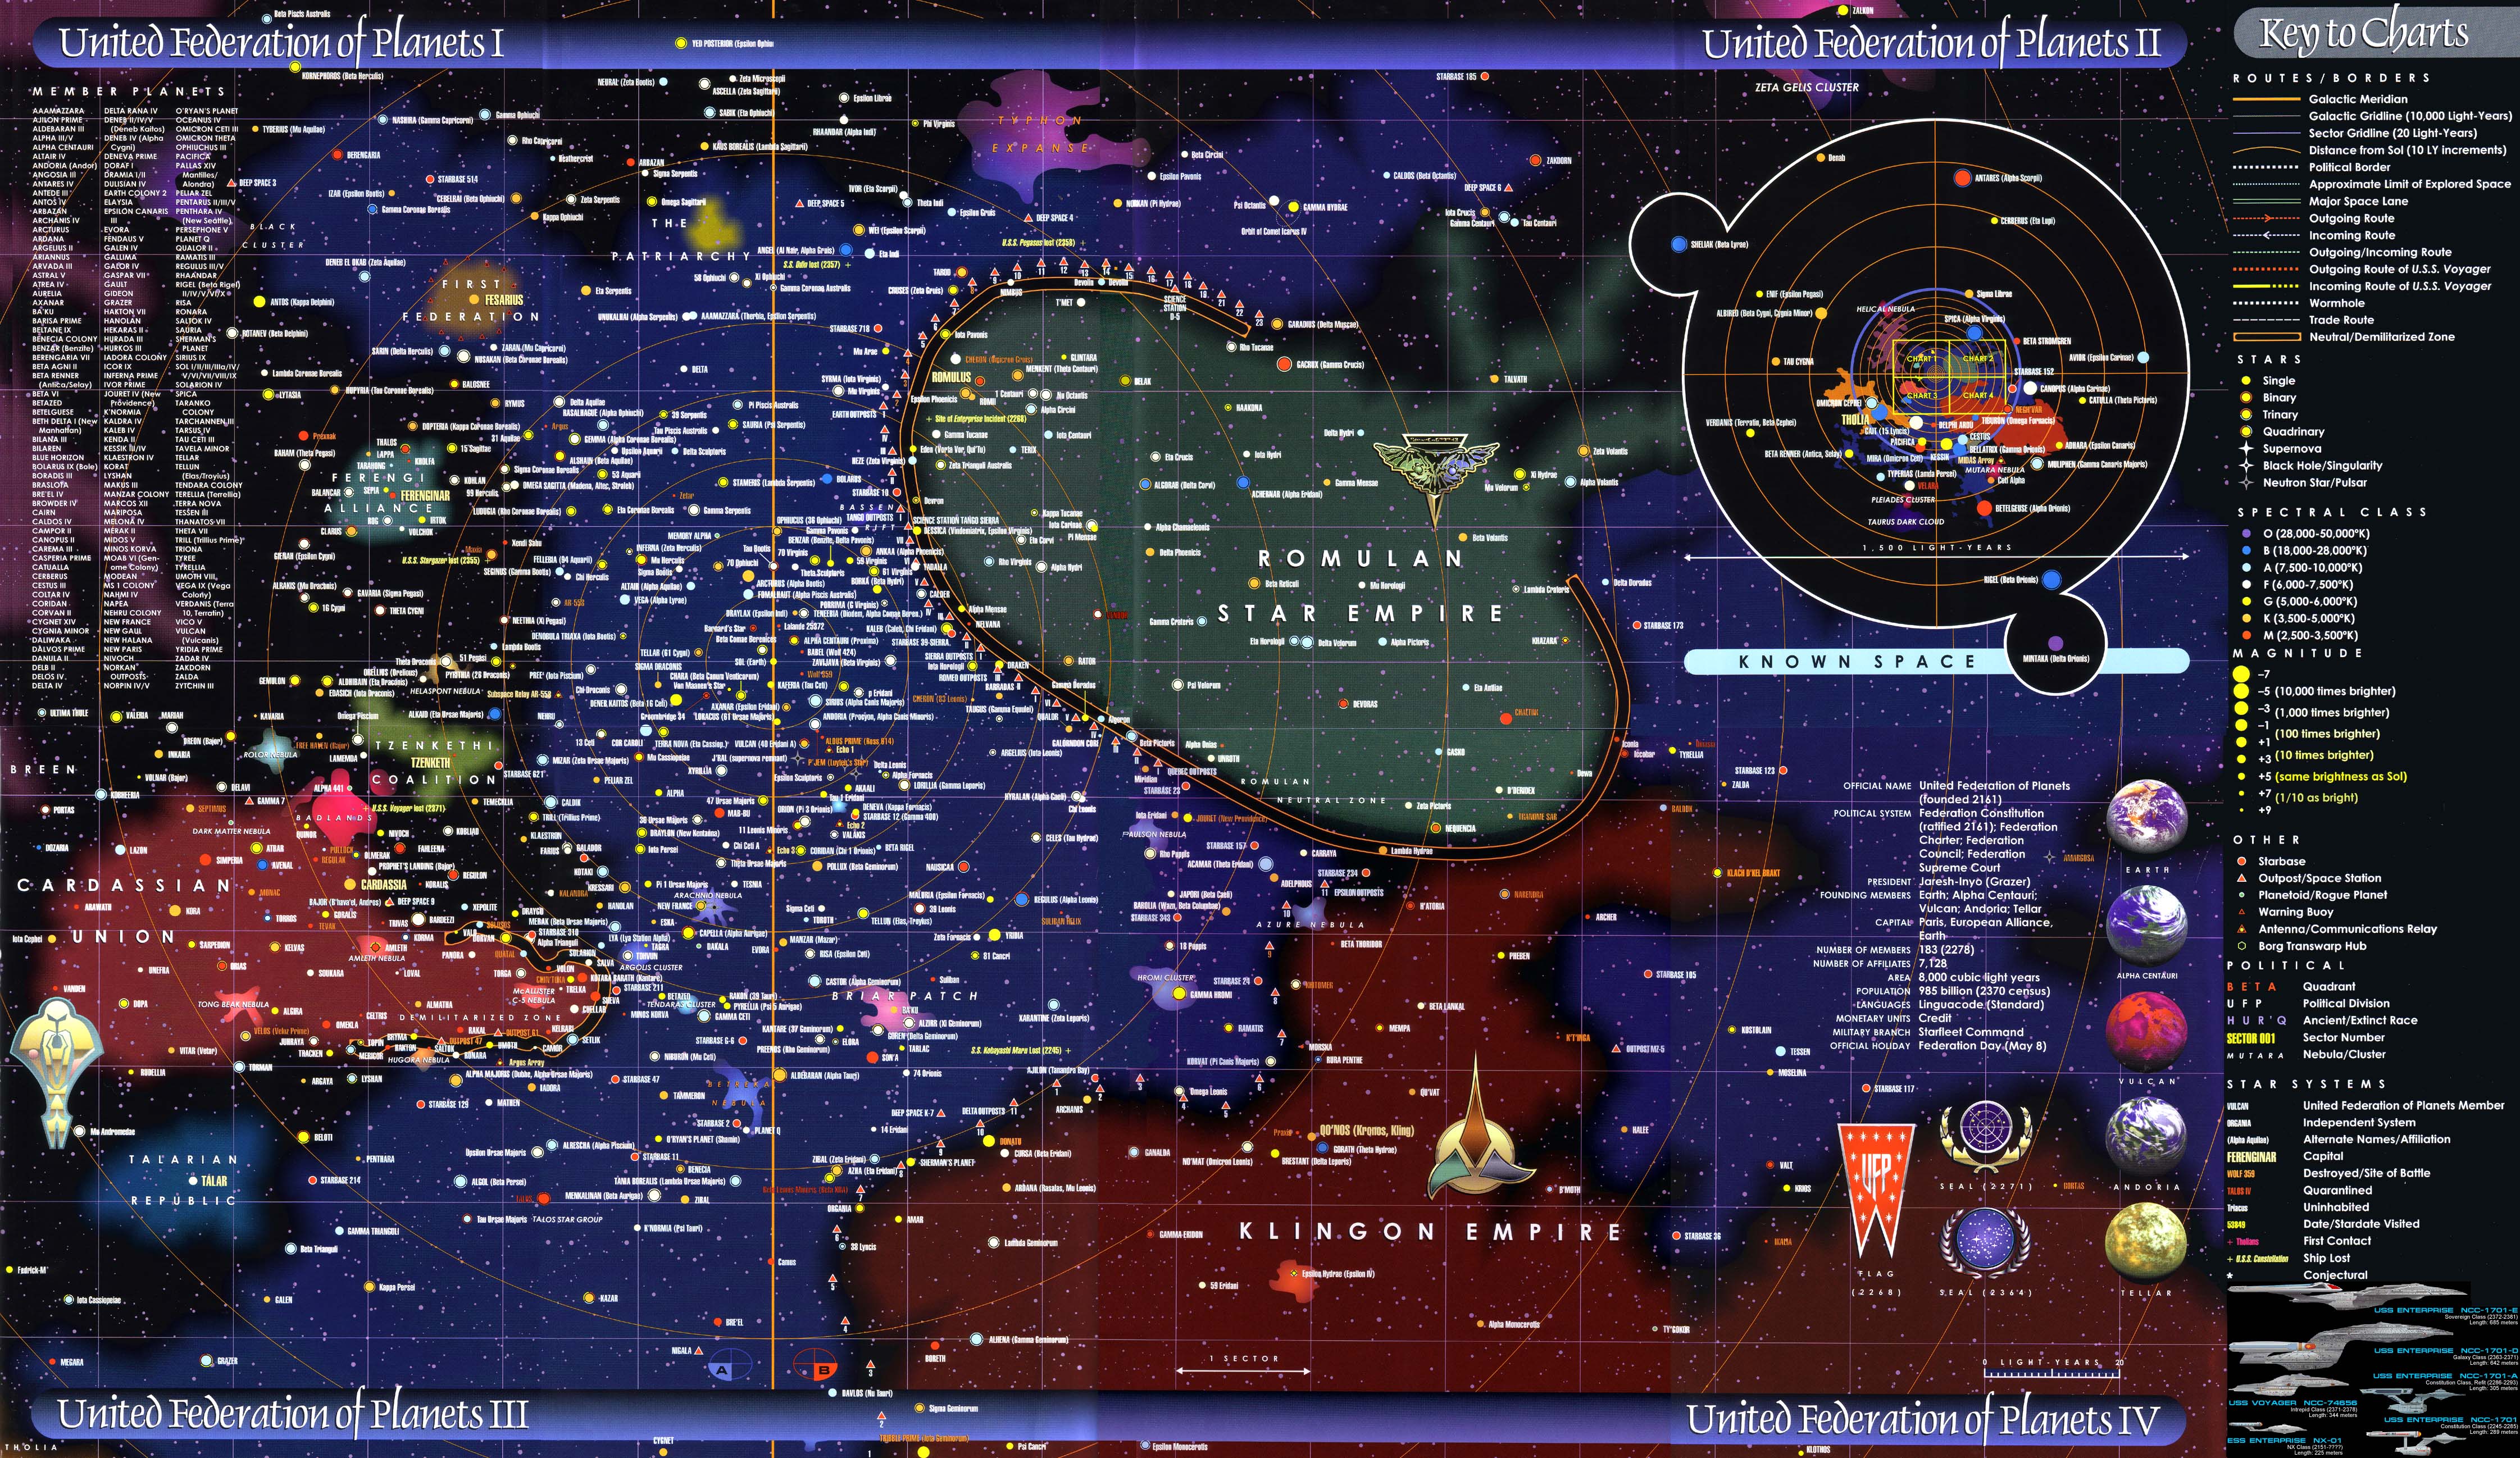 star trek térkép Star Trek A Terkepekre Es Tovabb Geekhub Geek Eloszto Es Webshop star trek térkép